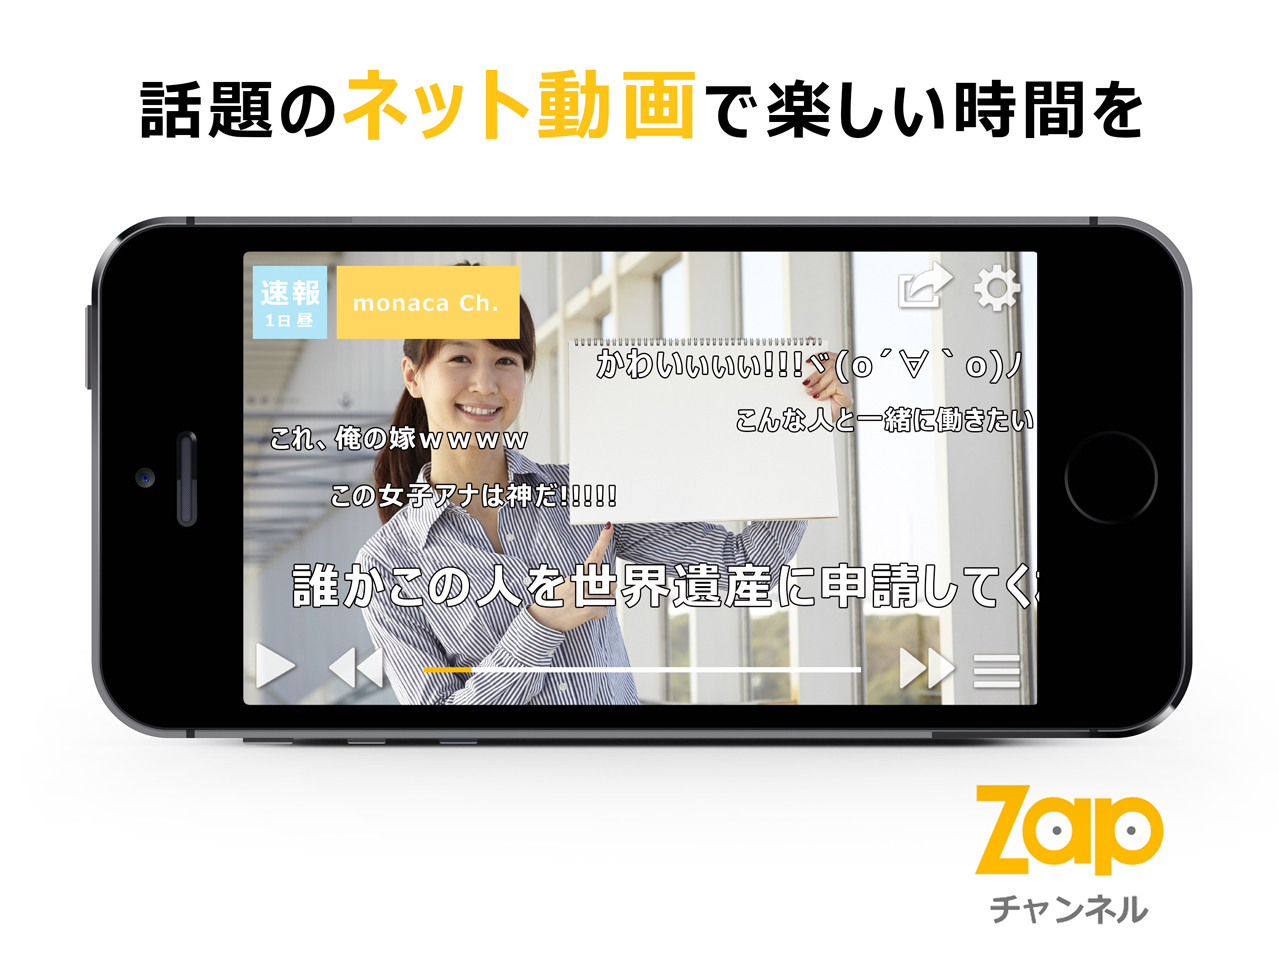 話題のネット動画で楽しい時間を 動画キュレーションアプリ Zap チャンネル をapp Storeにて配信開始 もなかllpのプレスリリース